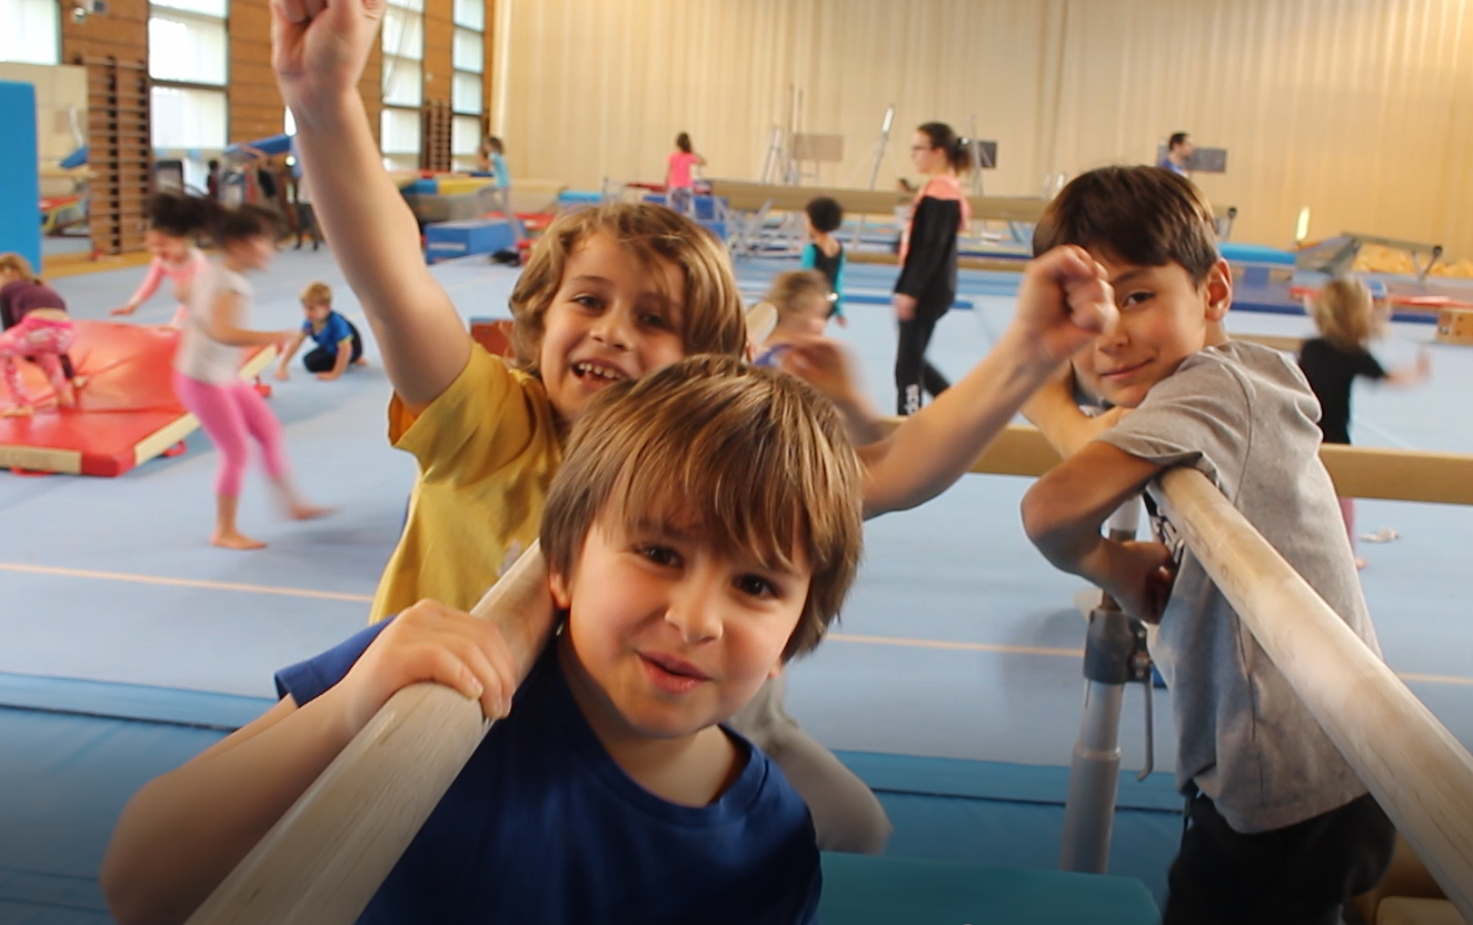 Gymnastique : un sport pour les filles et les garçons (activité  extra-scolaire) - Citizenkid